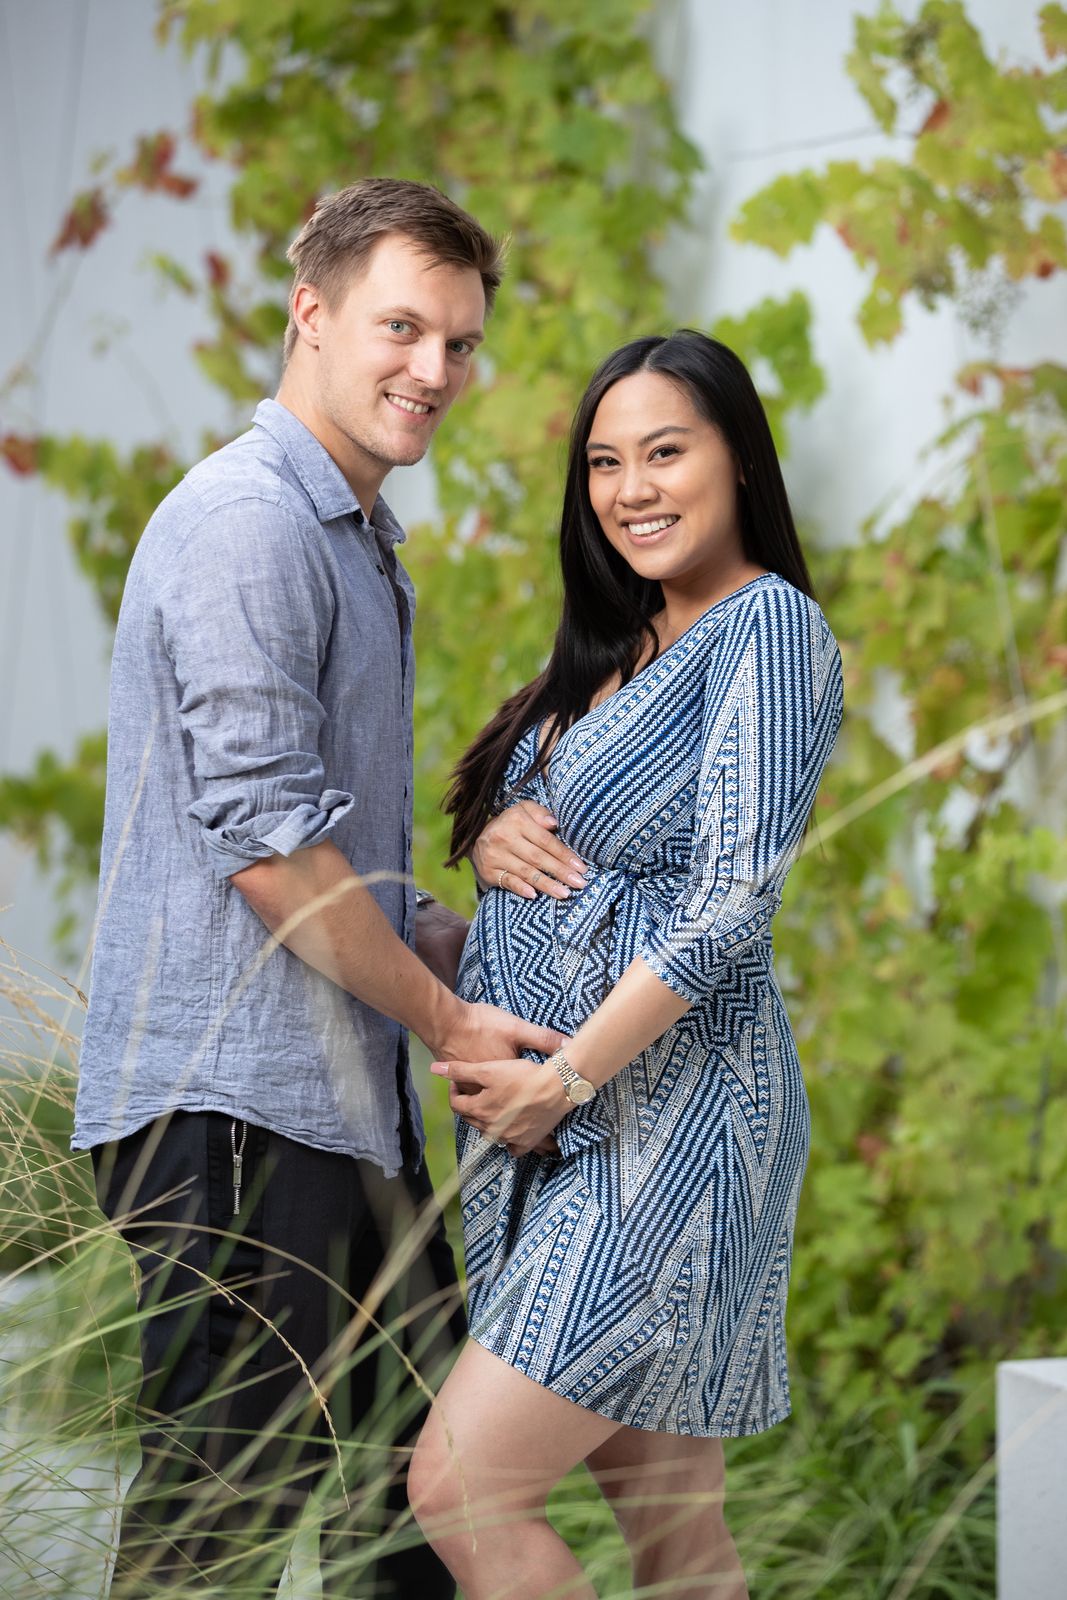 Tomáš Verner se zanedlouho stane poprvé otcem. Manželka Tammy mu v září 2020 porodí prvního potomka.